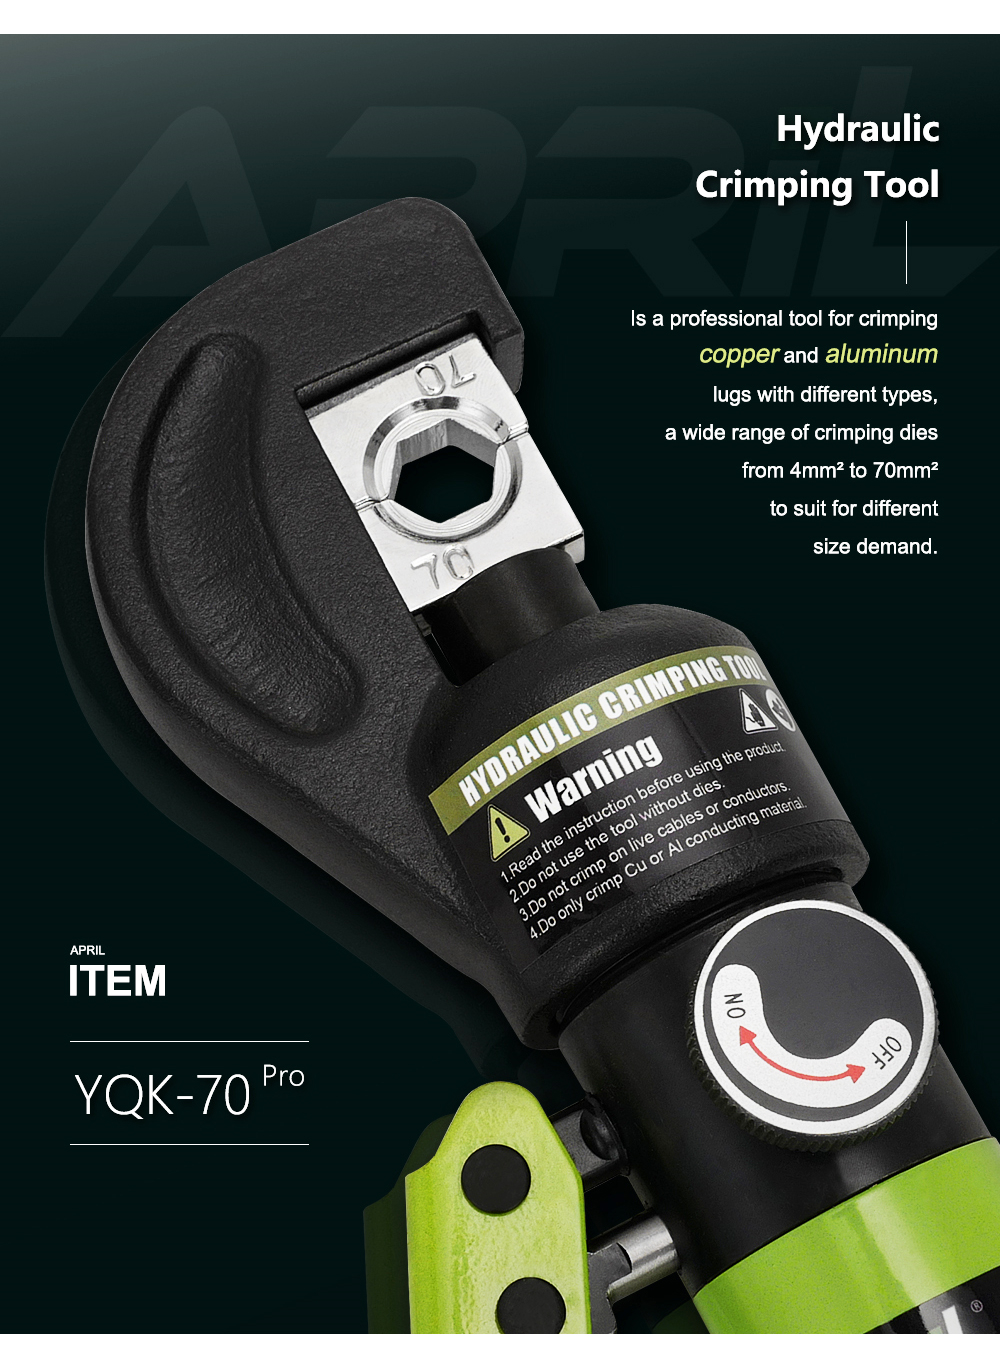 YQK-70-Range-4-70MM2-Hydraulic-Crimping-Tool-Hydraulic-Crimping-Plier-Hydraulic-Compression-Tool-1754164